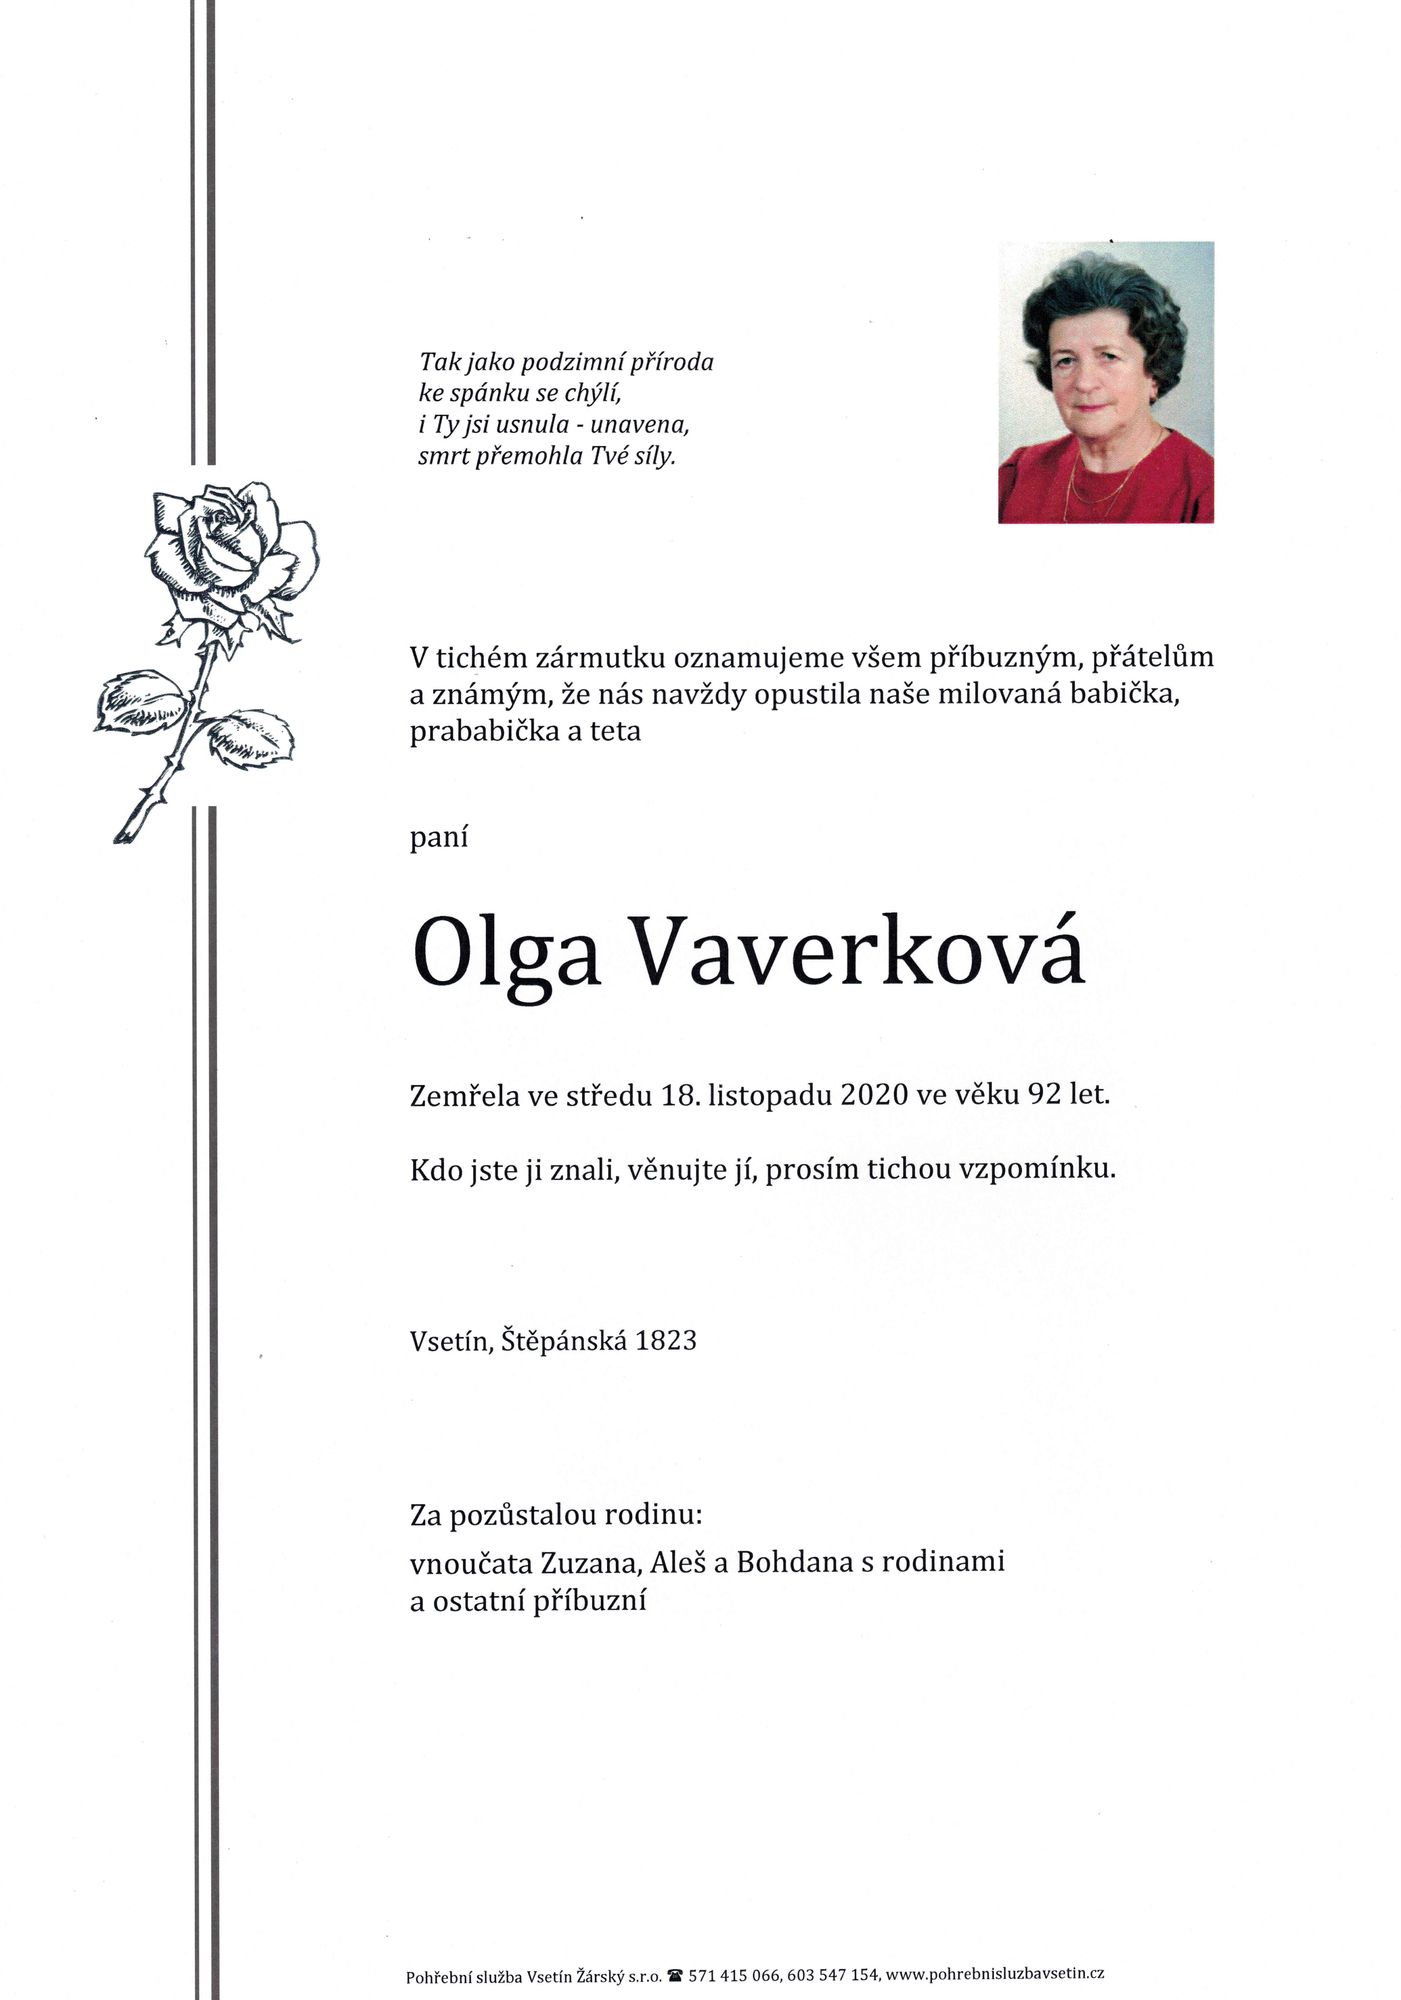 Olga Vaverková